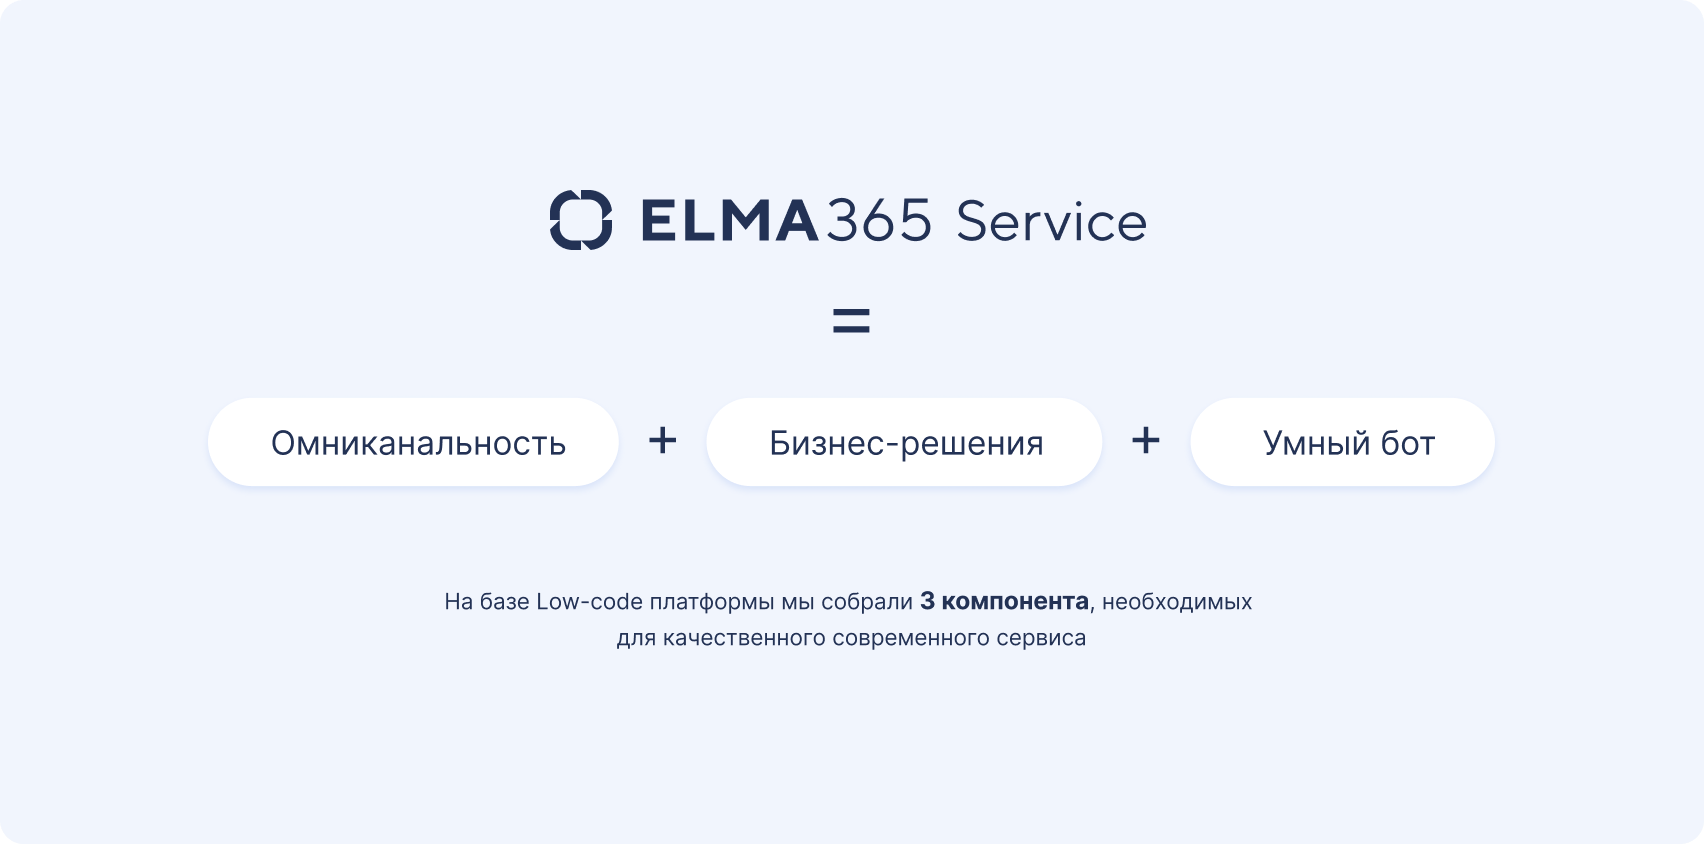 ELMA365 Service — лучший сервис для ваших клиентов, сотрудников и партнеров